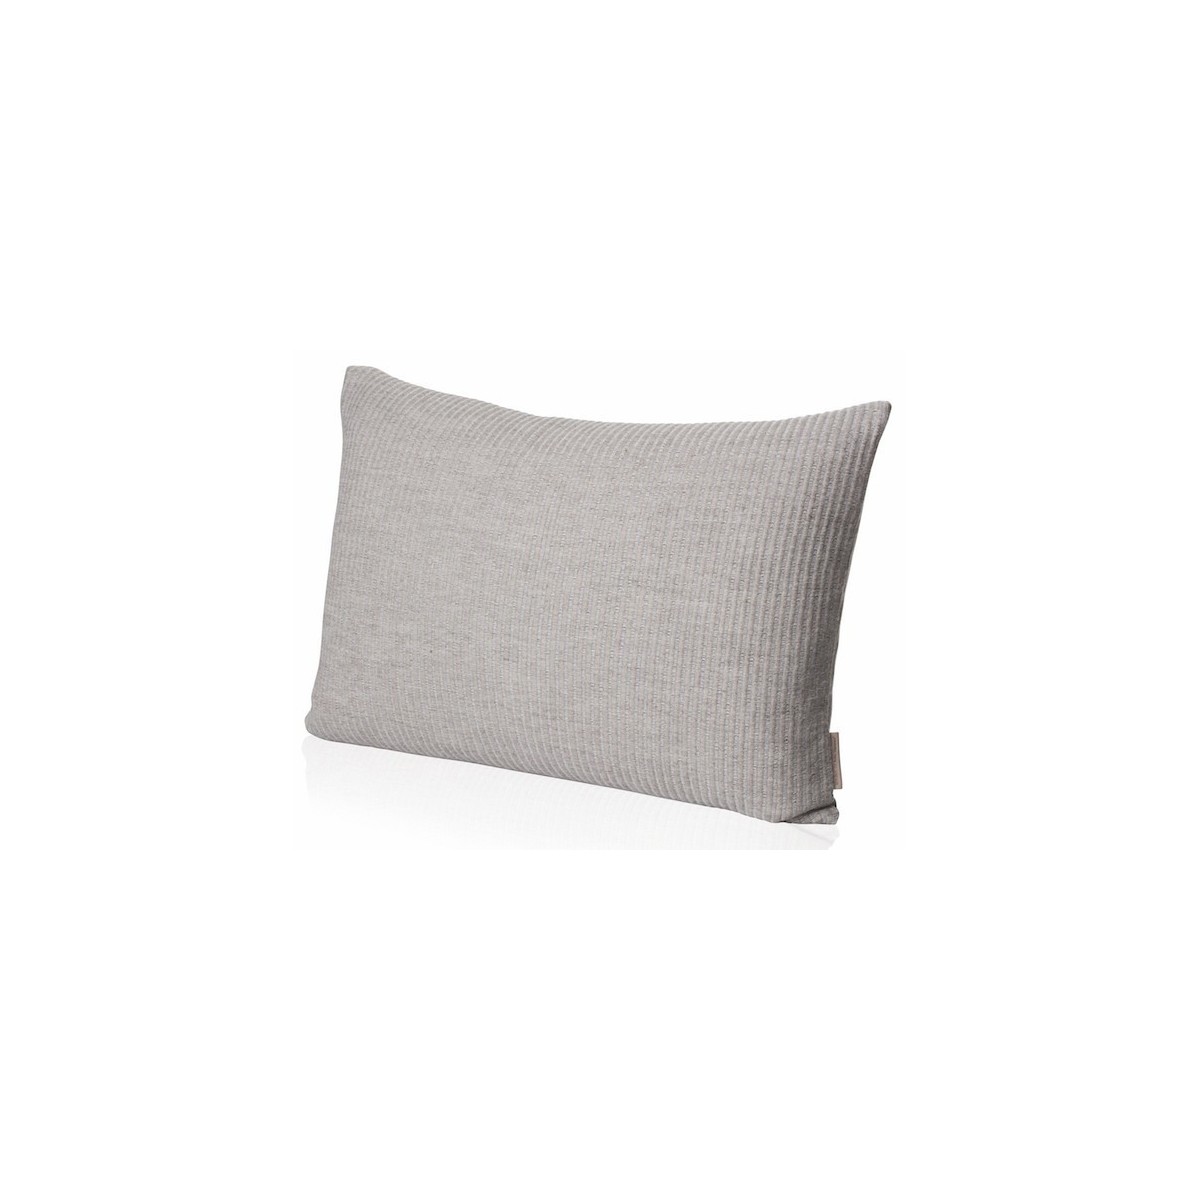 oat - Aiayu cushion - 40x60cm